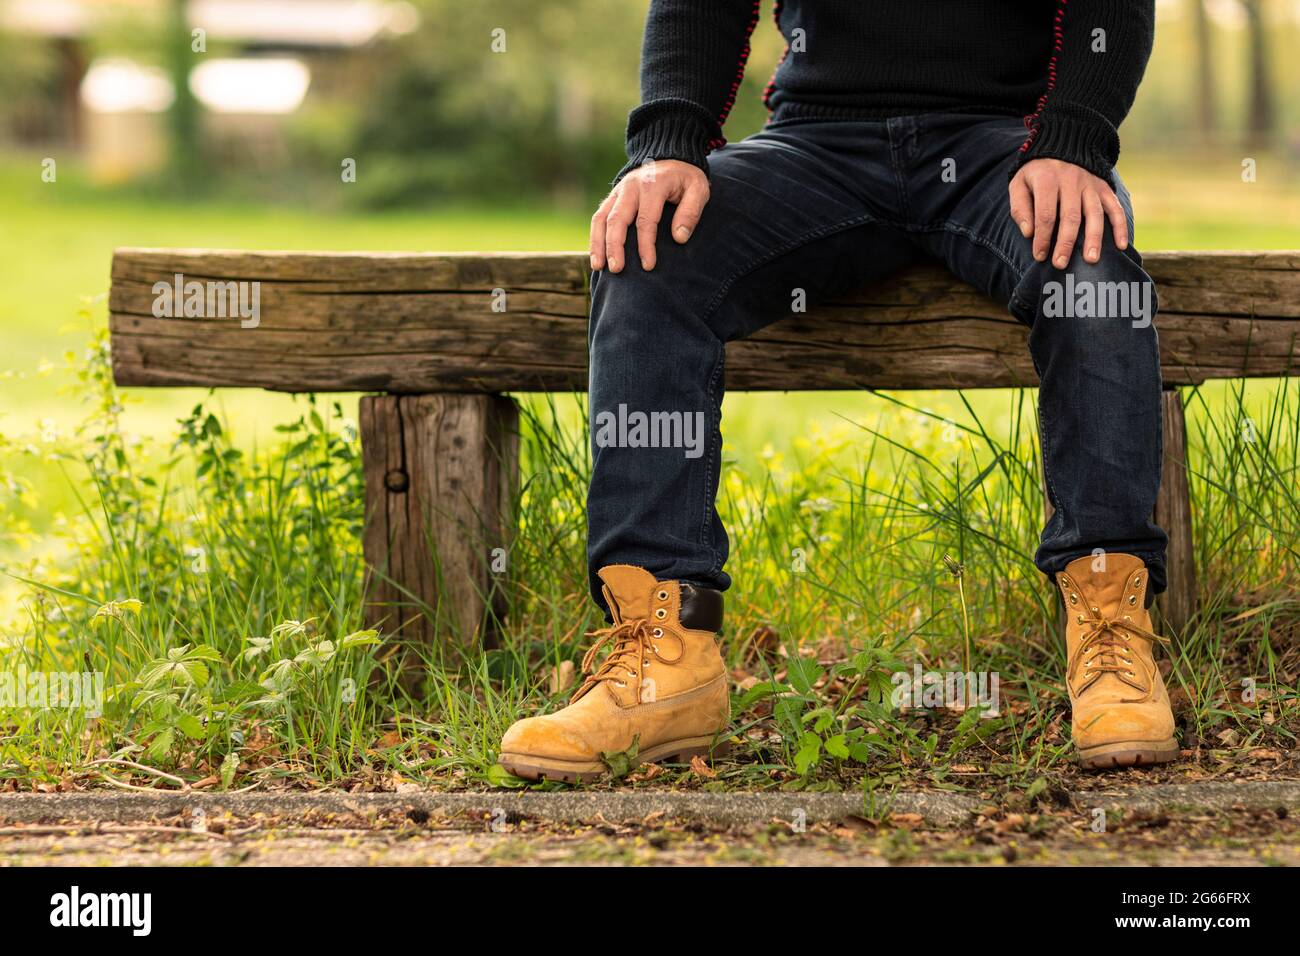 Homme ouvrier ou fermier portant des vêtements et des chaussures  décontractés assis, se reposant et relaxant, appréciant la nature dehors  sur un banc rustique à côté d'une gra verte Photo Stock -